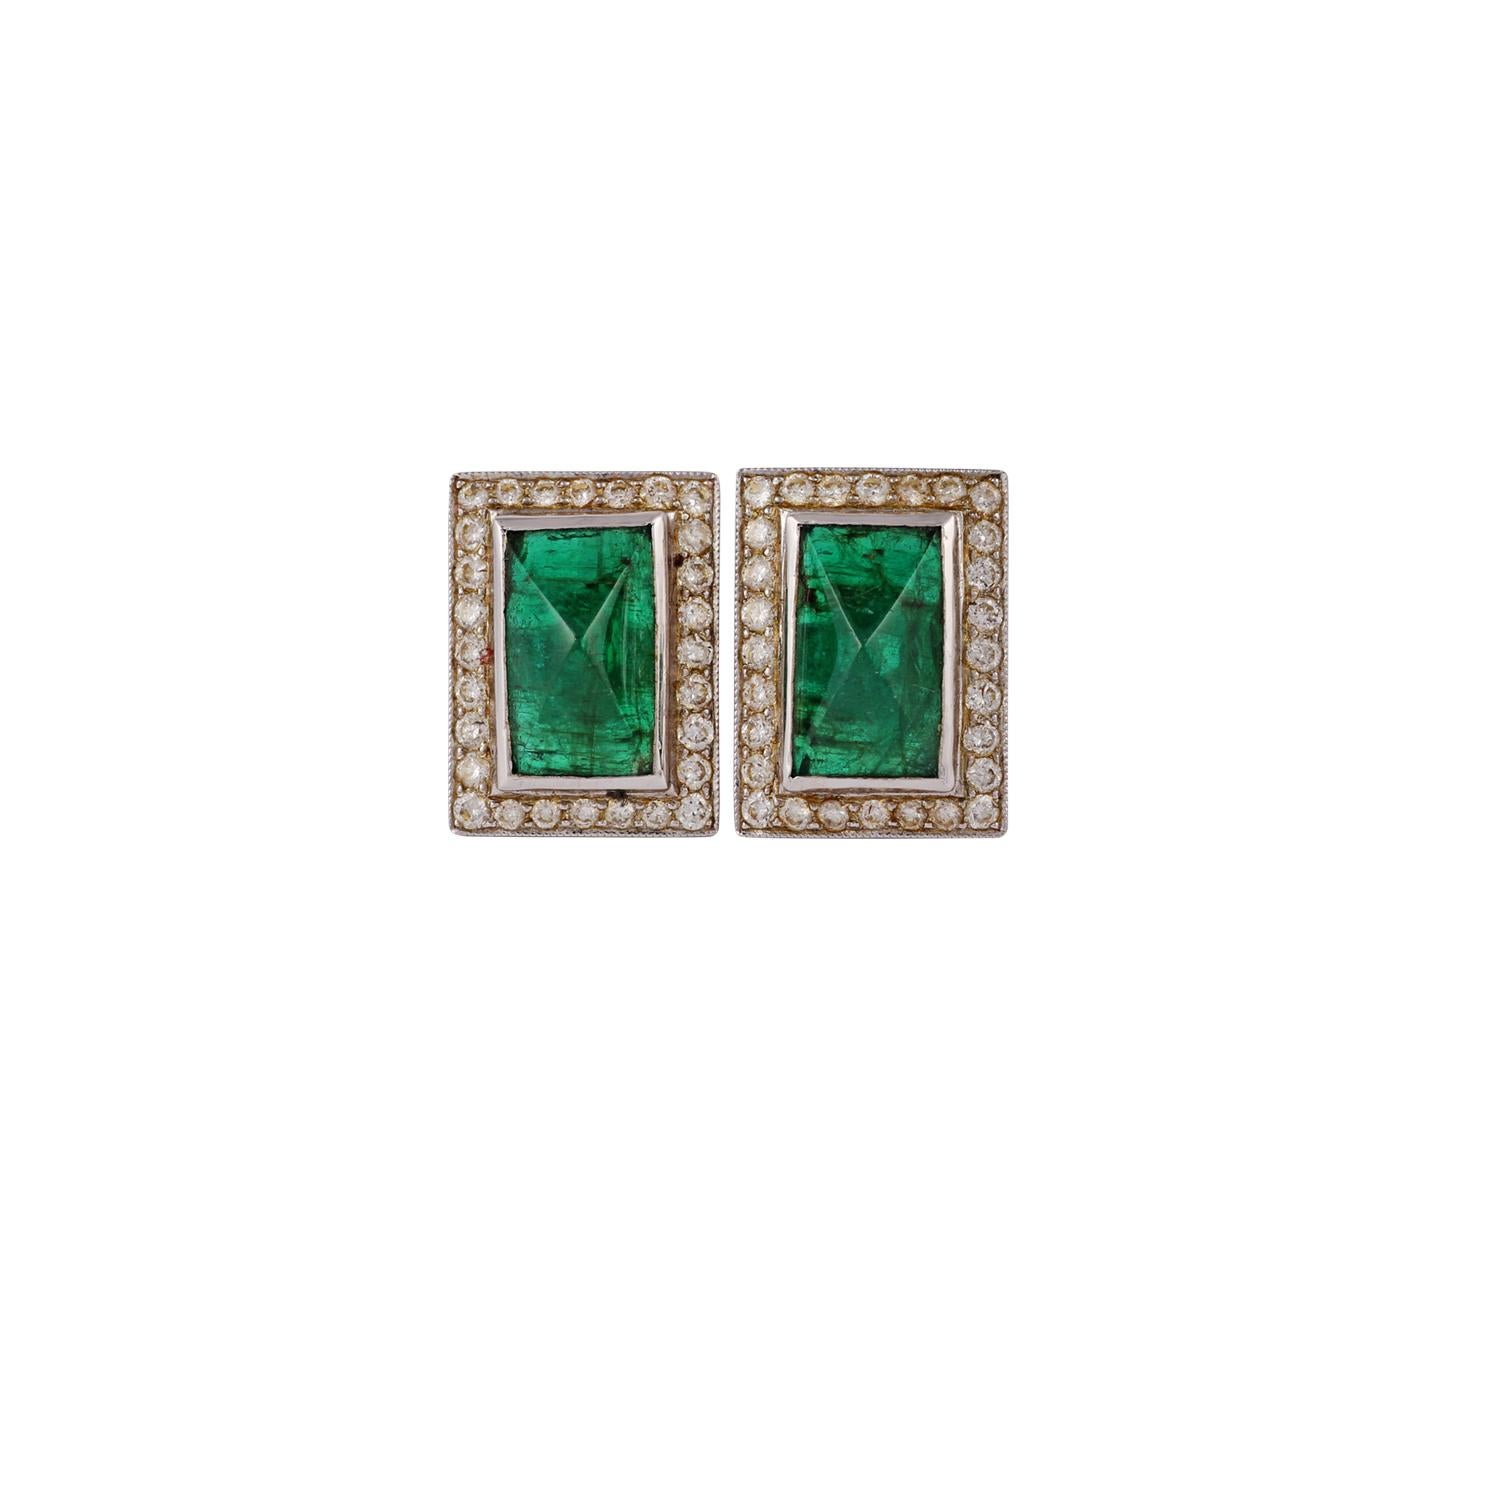 Dies ist ein elegantes Ohrstecker-Paar mit Smaragd & Diamanten Funktion 2 Stück  Smaragde Gewicht 2,76 Karat, Diamanten Gewicht 1,01 Karat , diese Ohrringe ganz in 18K Weißgold Gewicht 6,24 Gramm gemacht.